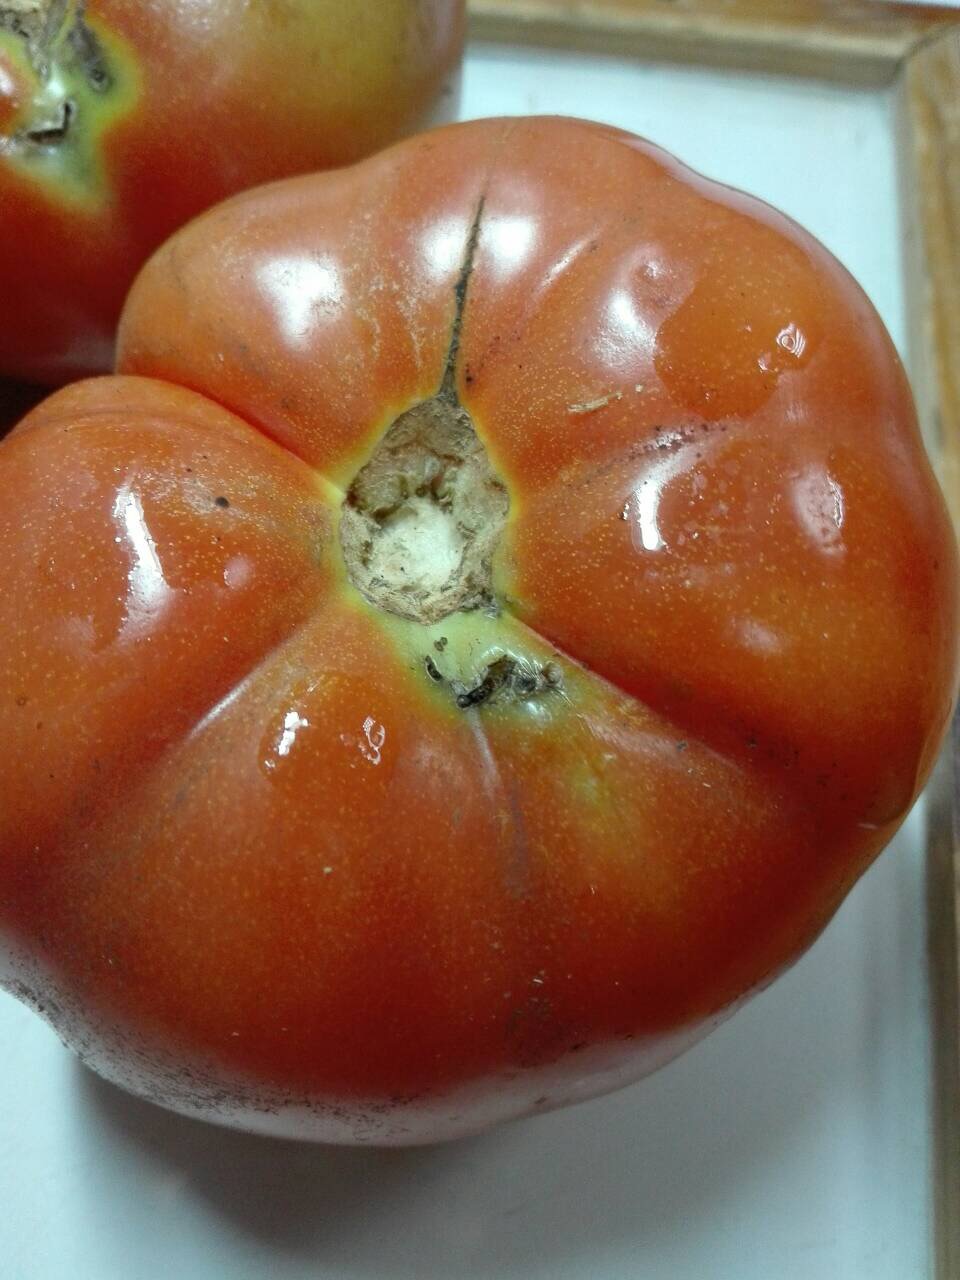 Южноамериканская томатная моль